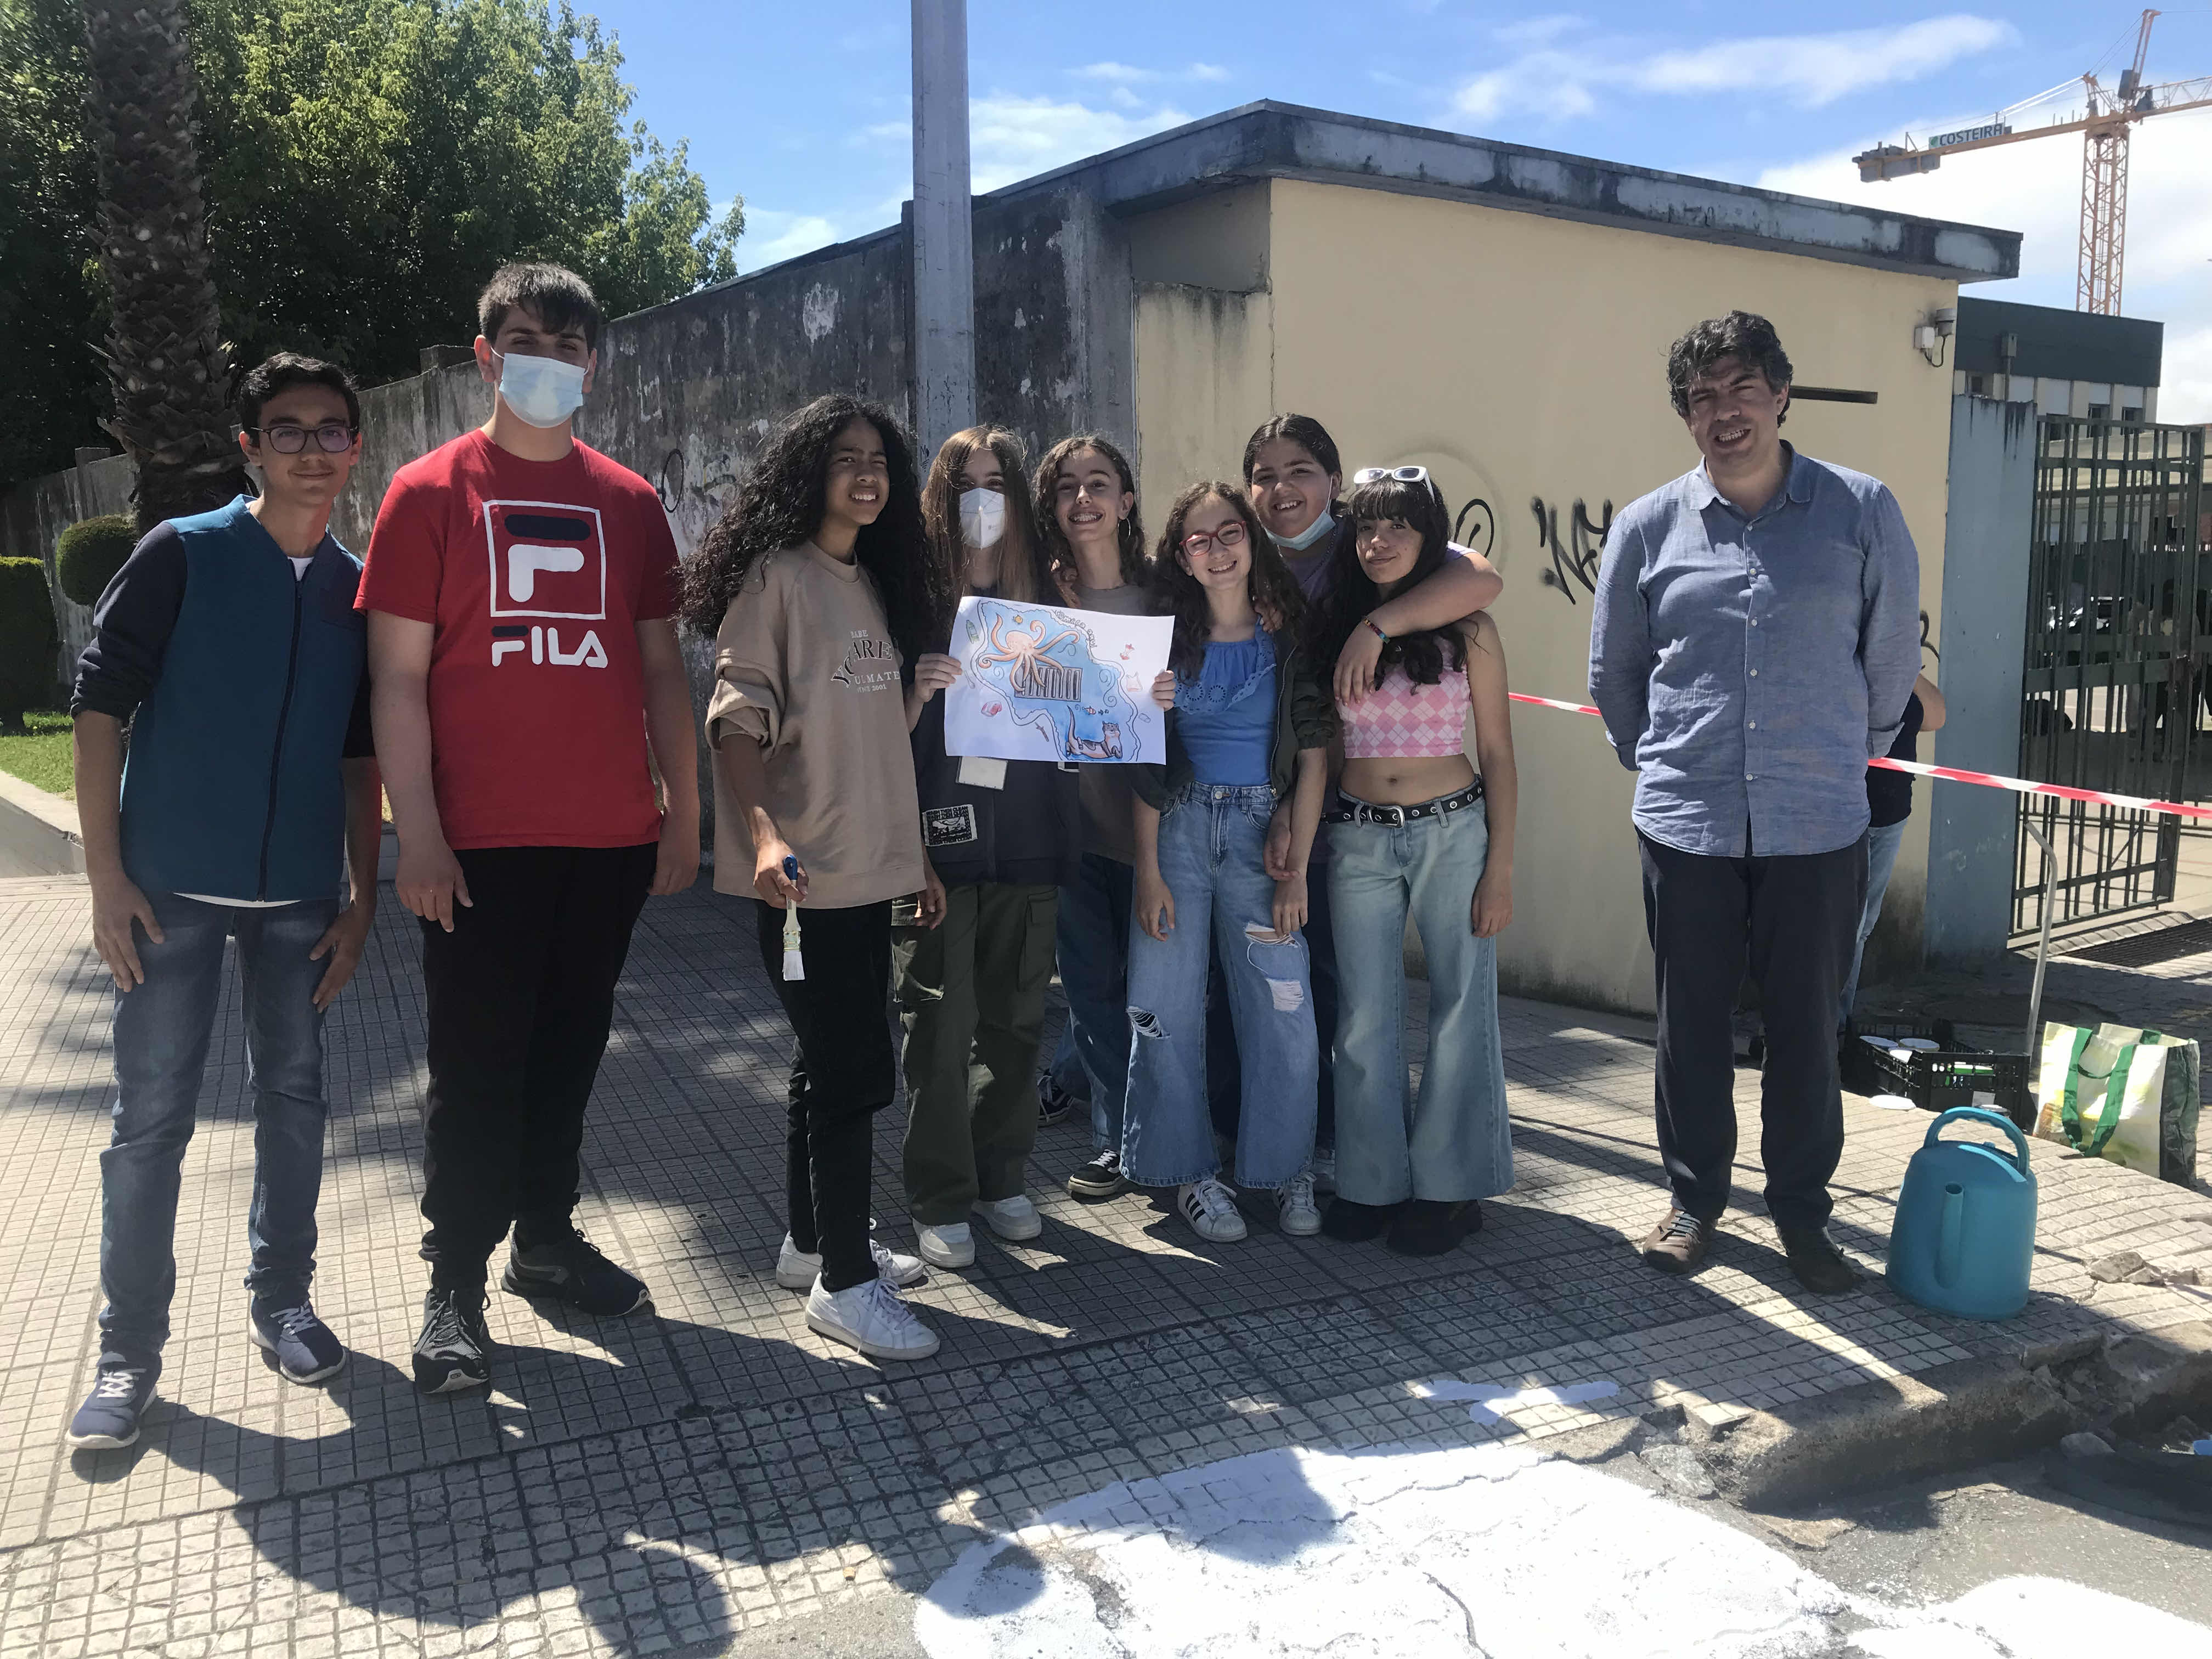 A turma do 7º G, da escola Maria Manuela de Sá, no ano letivo de 2021-2022, que se empenhou no projeto e ajudou à execução do trabalho no espaço público da rua.